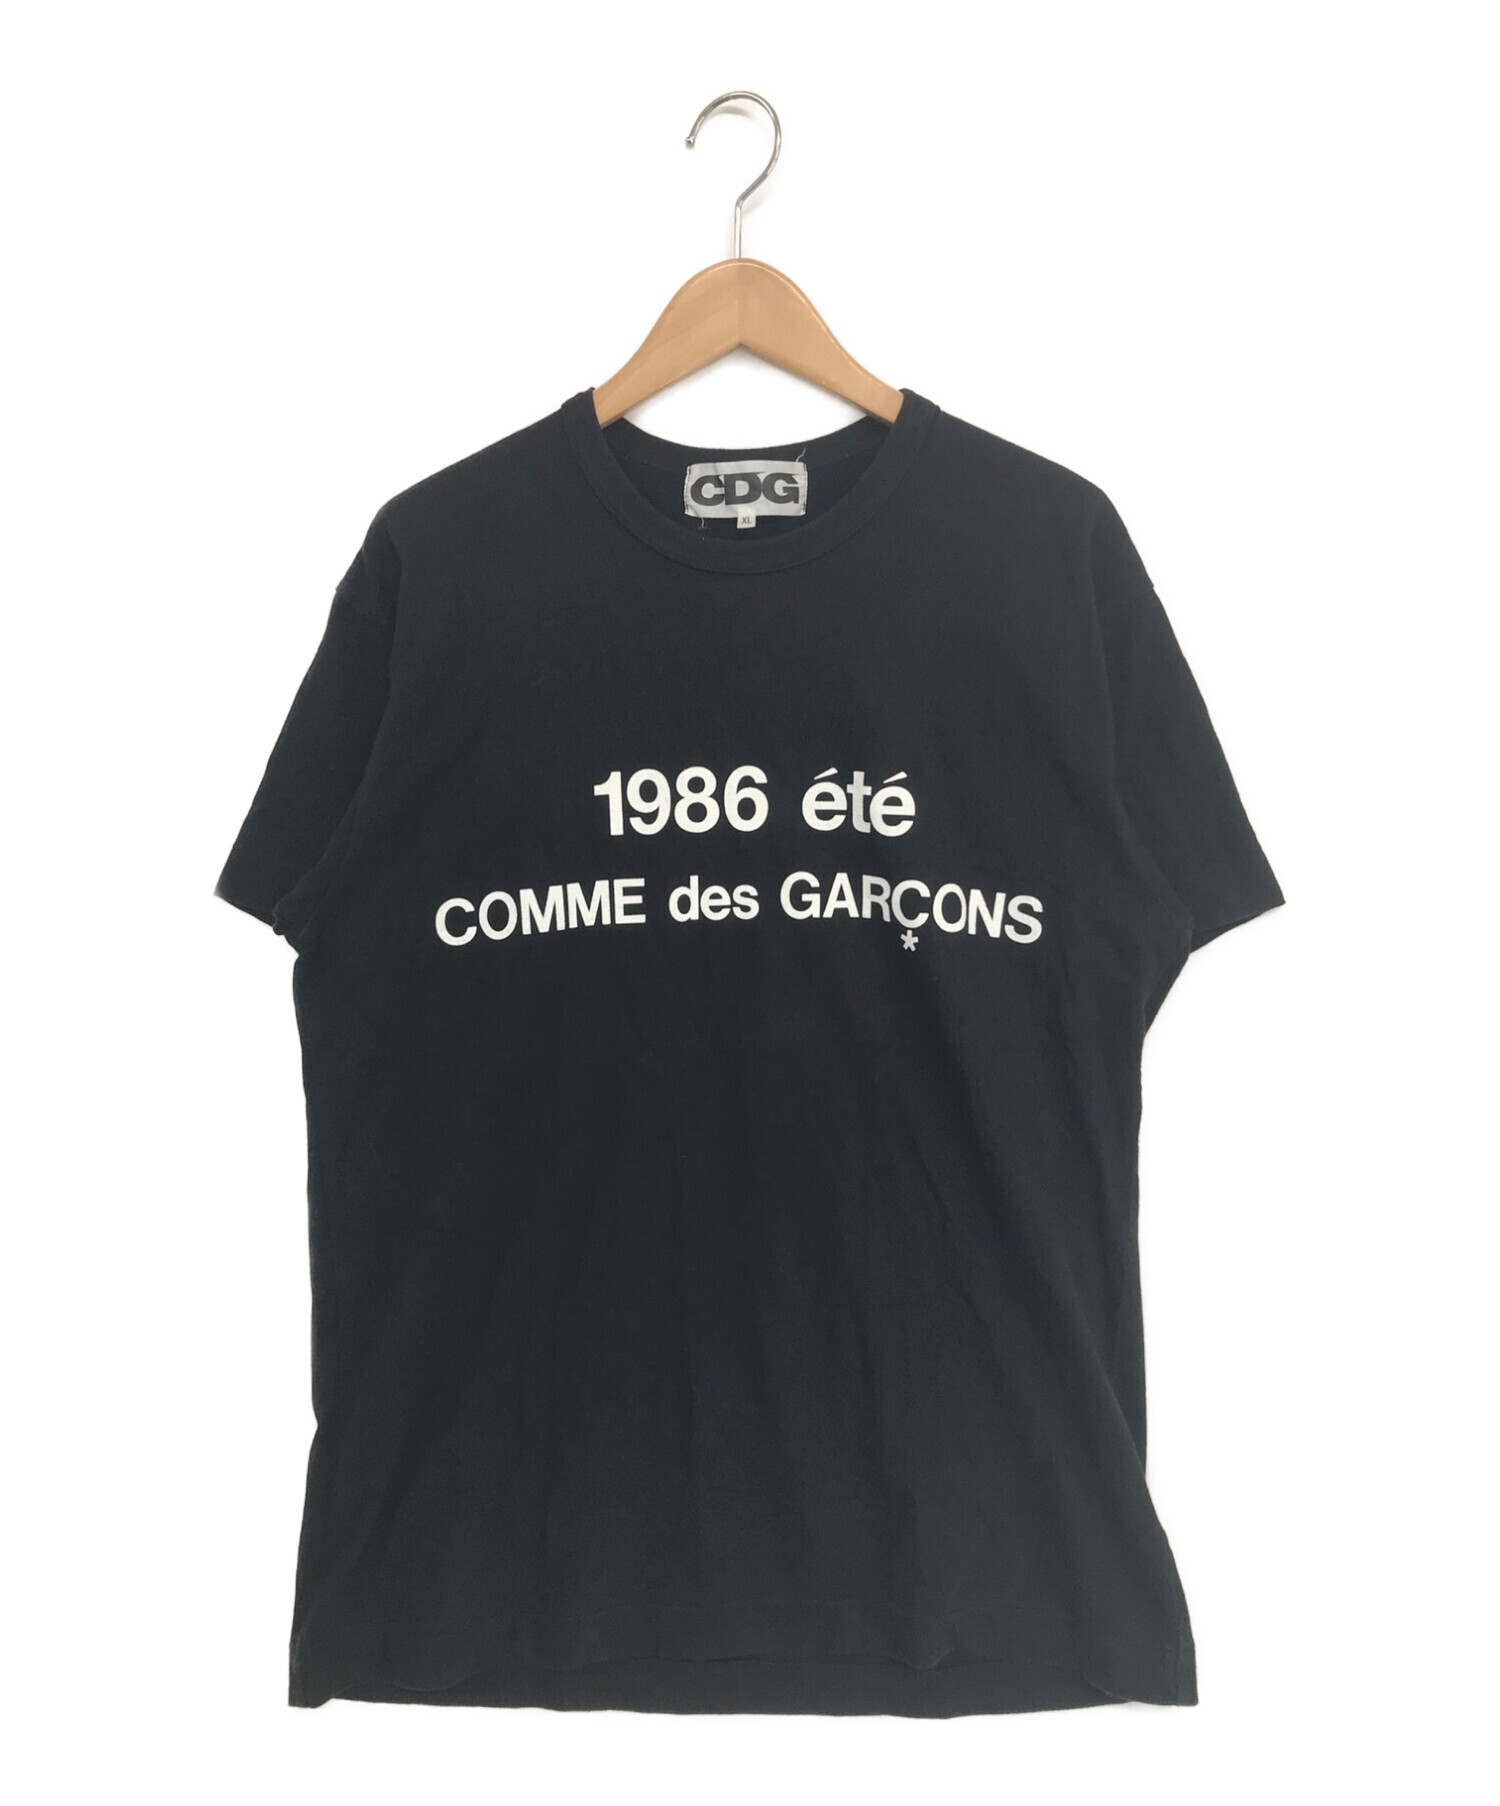 CDG (シーディージー コムデギャルソン) 1986 ete S/S Tシャツ ブラック サイズ:XL